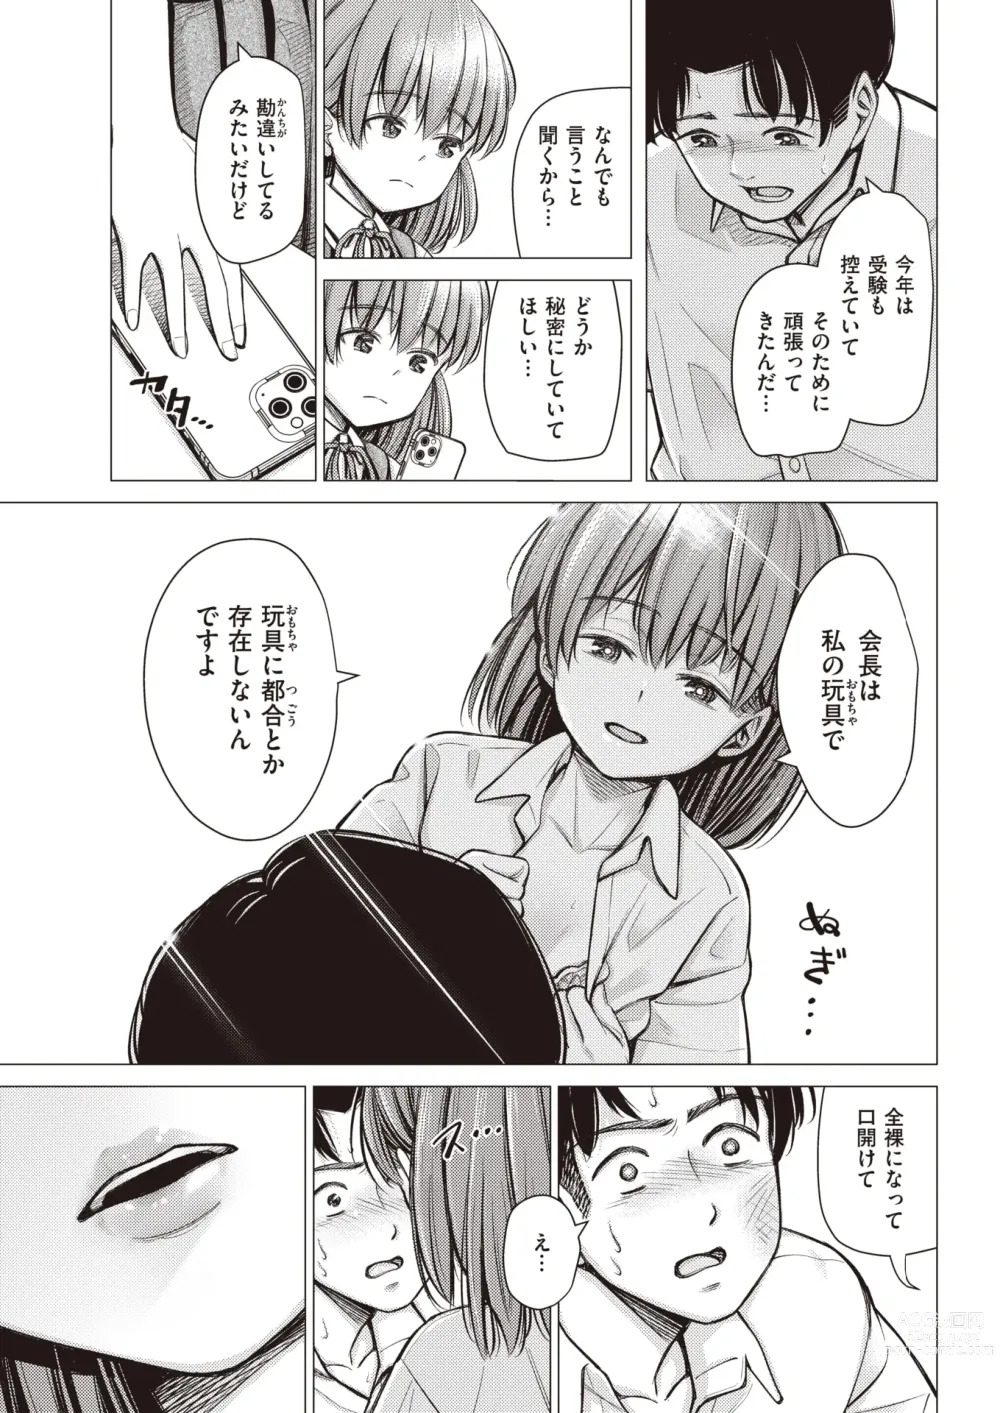 Page 9 of manga Honne. Mukidashi no Shigyakushin de...